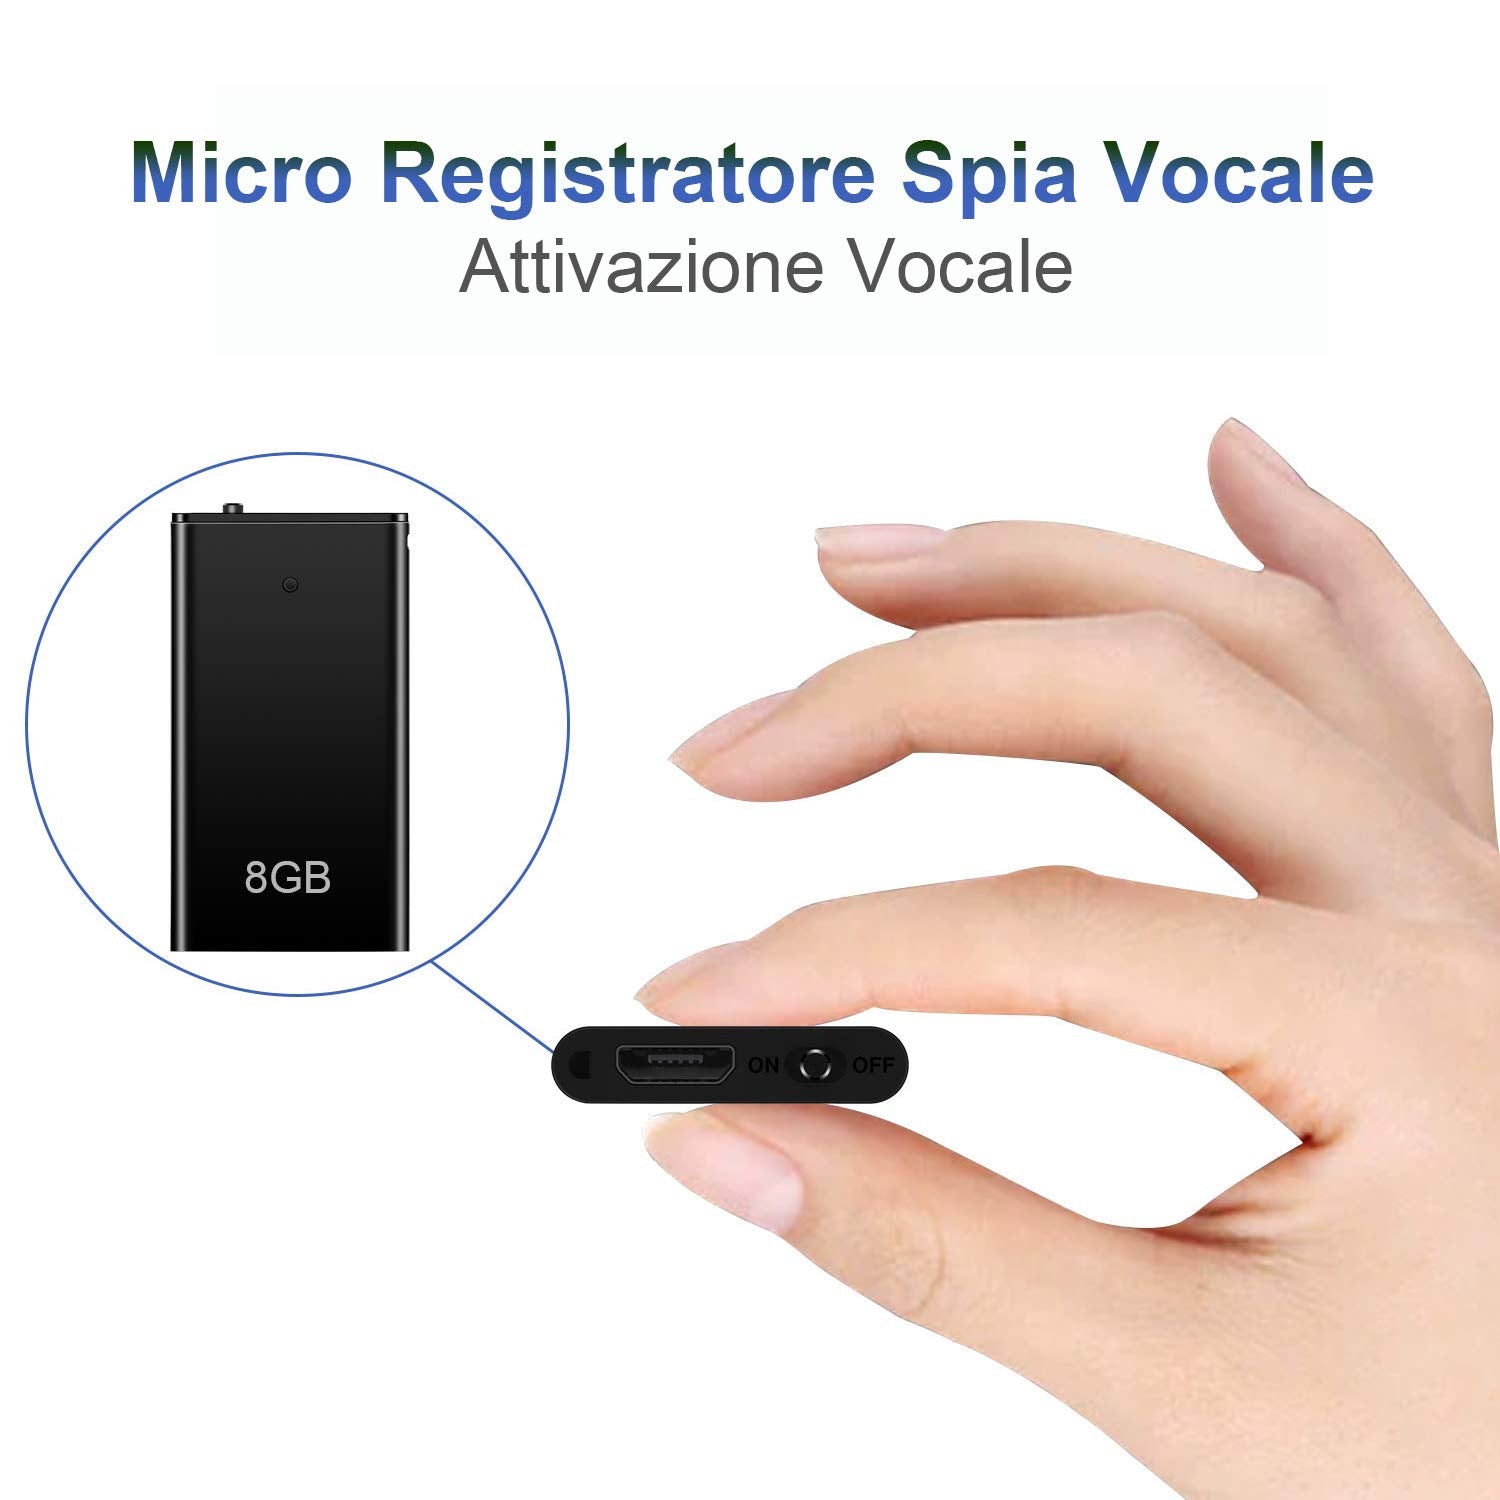 Mini Spia Registratore Vocale H+Y con Attivazione Vocale, Memoria 8 GB –